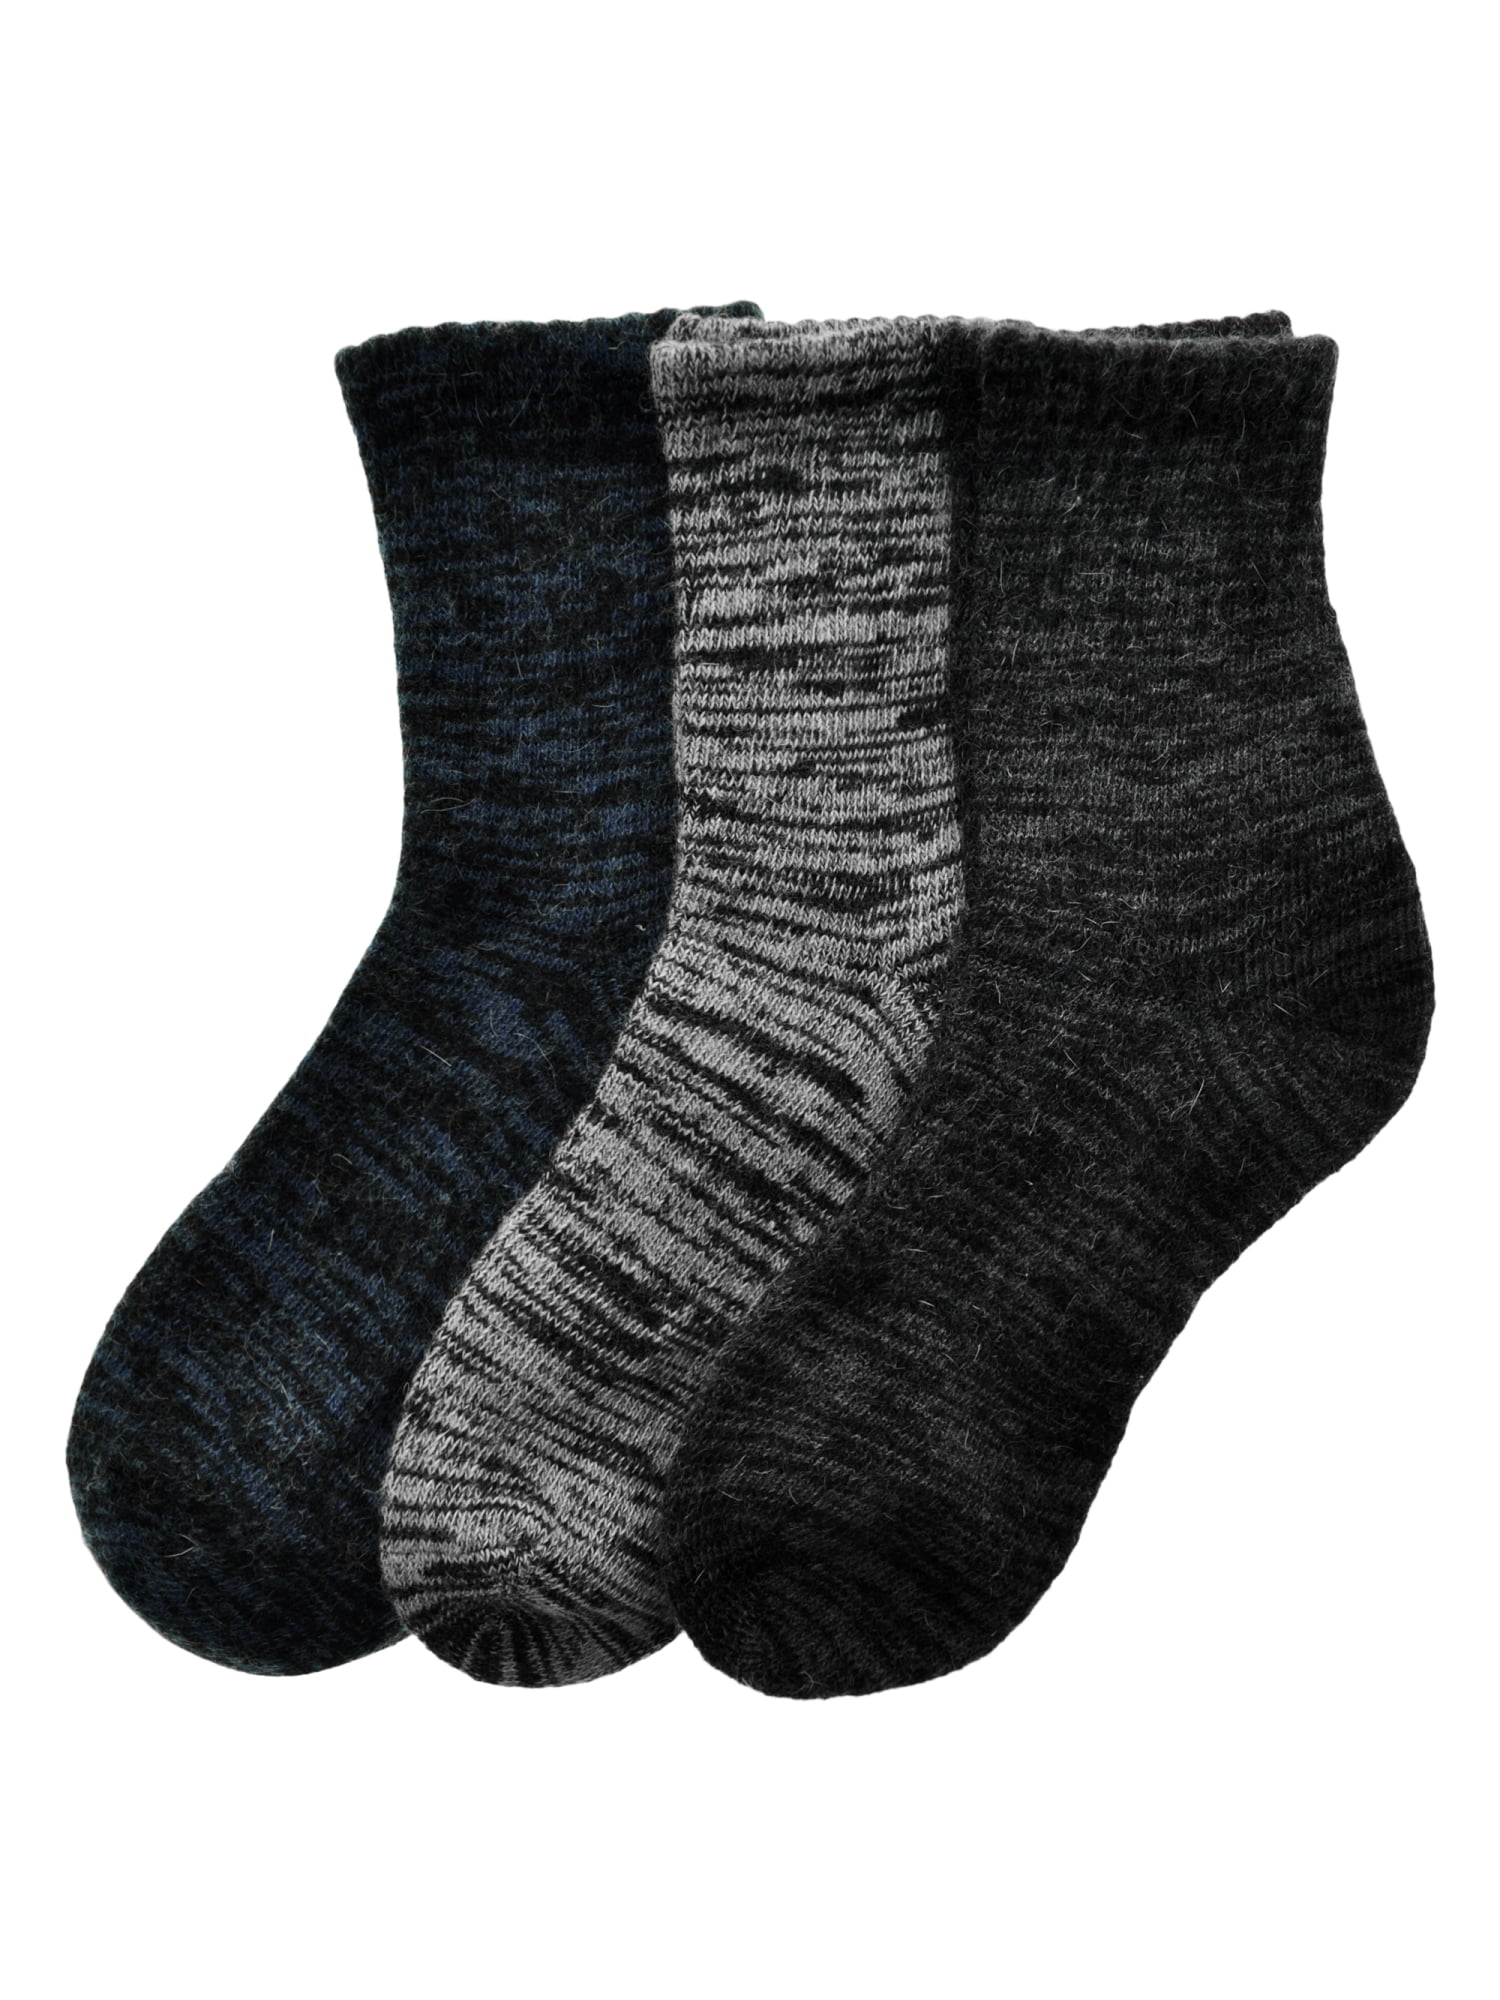 Women's Winter Warm Knitted Leg Warmers High Stockings Long Socks